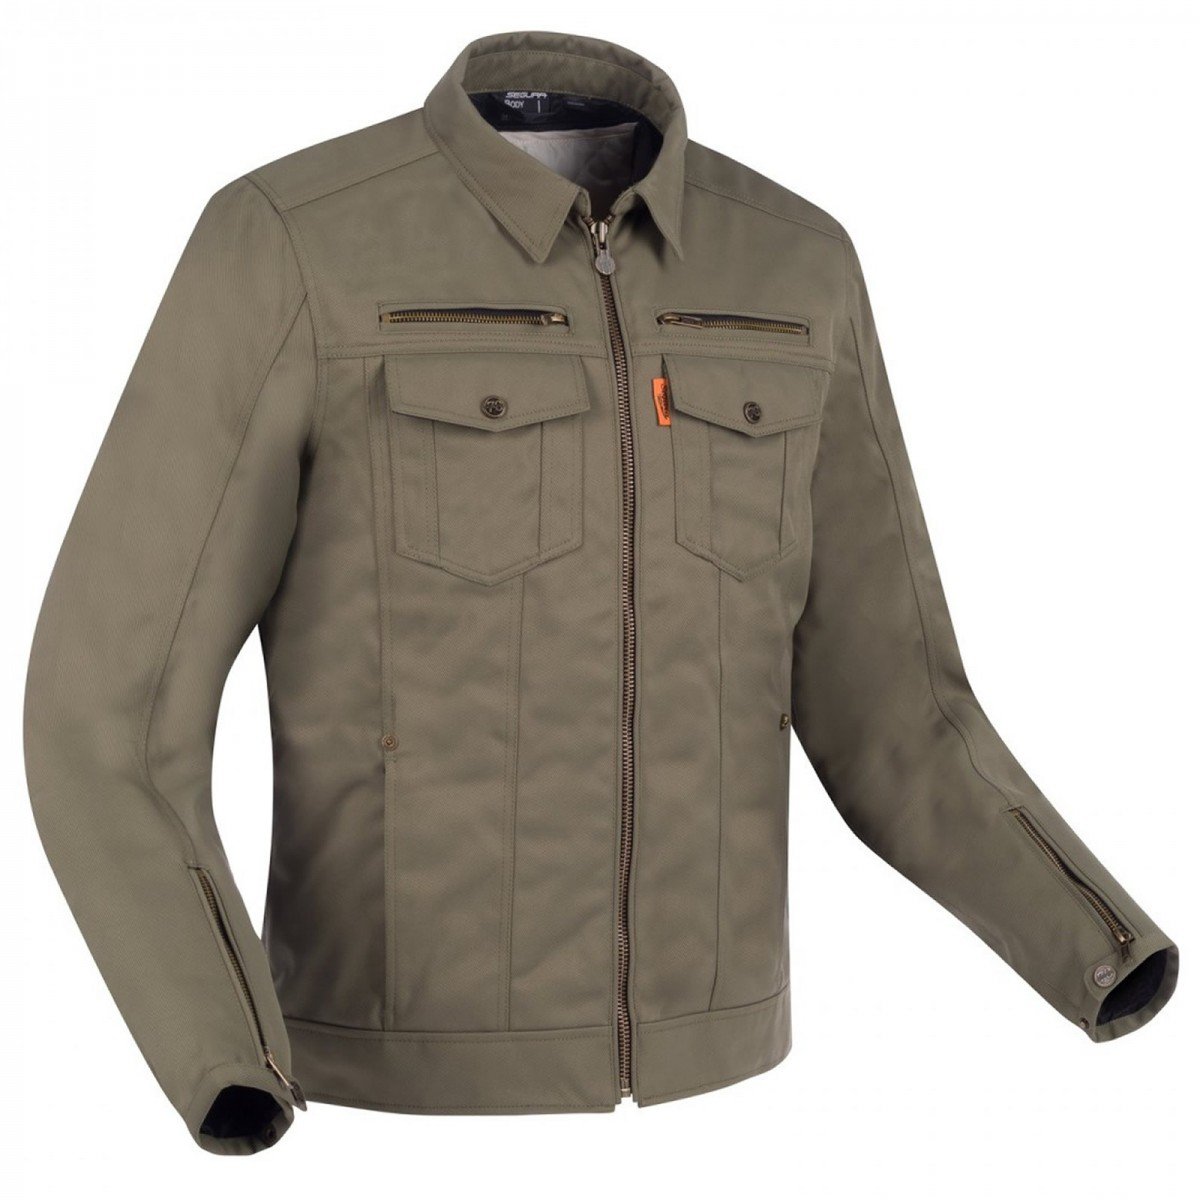 Image of Segura Patrol Jacket Khaki Size 4XL ID 3660815163023